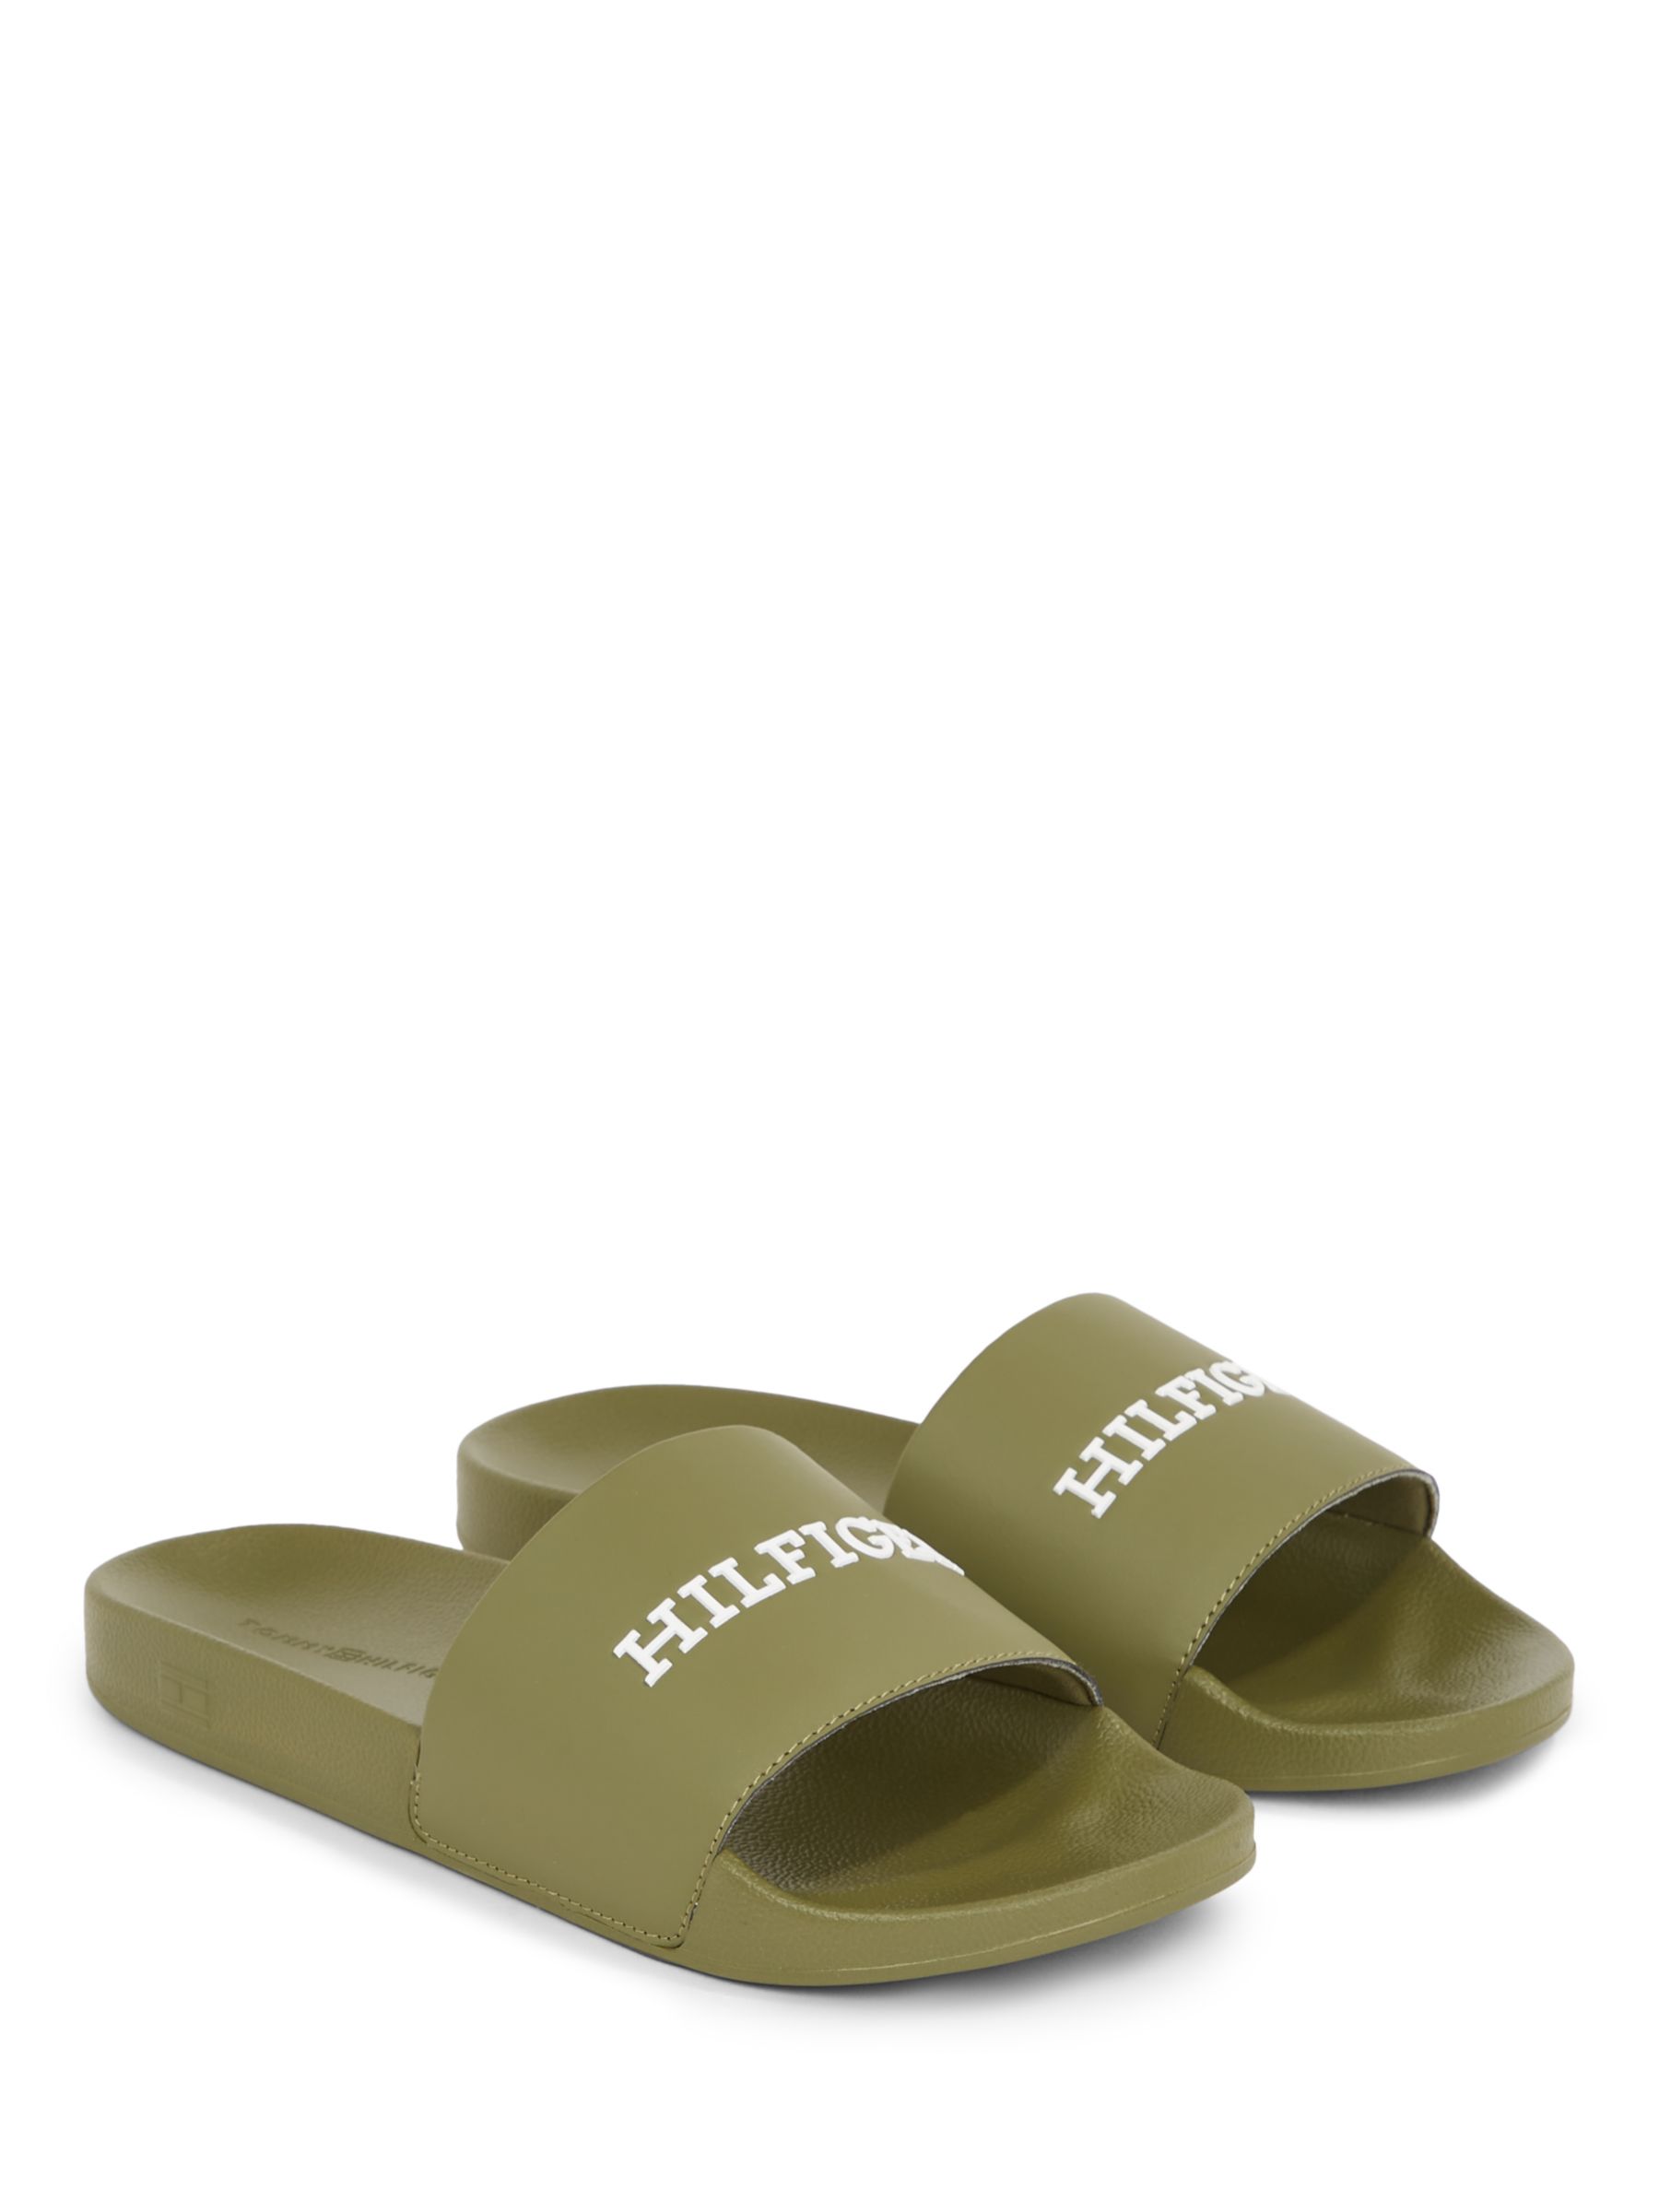 Tommy Hilfiger Pool Slide Sandals, Mash Green, EU41